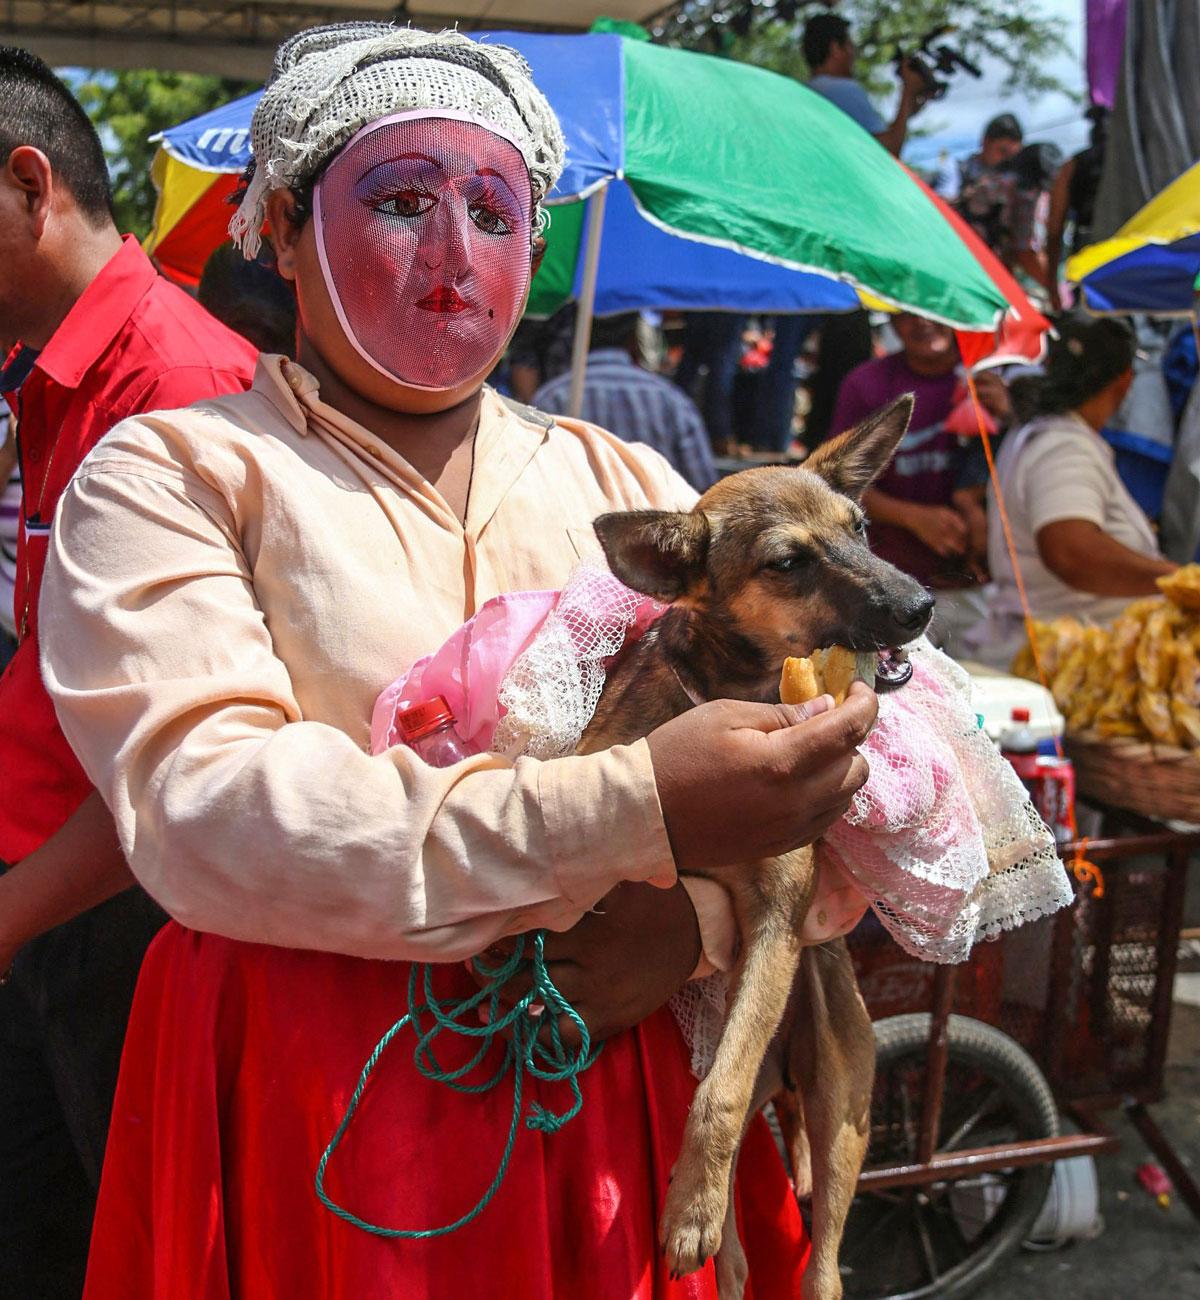 Perinnetanssija ruokkii koiraansa Pyhän Lasaruksen -festivaalilla Monimbon lähiössä Masayan kaupungissa Nicaraguassa. Täällä Lasarusta kunnioitetaan muun muassa pukemalla lemmikkikoirat.  Festivaali koostuu aamumessusta, jossa ihmiset pyytävät Lasarukselta koirilleen siunausta sekä ihmeitä heidän perheilleen ja ystävilleen. Juhliin kuuluu myös kisa, jossa parhaiten pukeutunut koira palkitaan. Tänä vuonna koirien kostyymikinkerit järjestettiin 7. huhtikuuta. Nicaragualaisille juhla on osa pyhää viikkoa (semana santa), jota juhlitaan pääsiäisen lähestyessä.